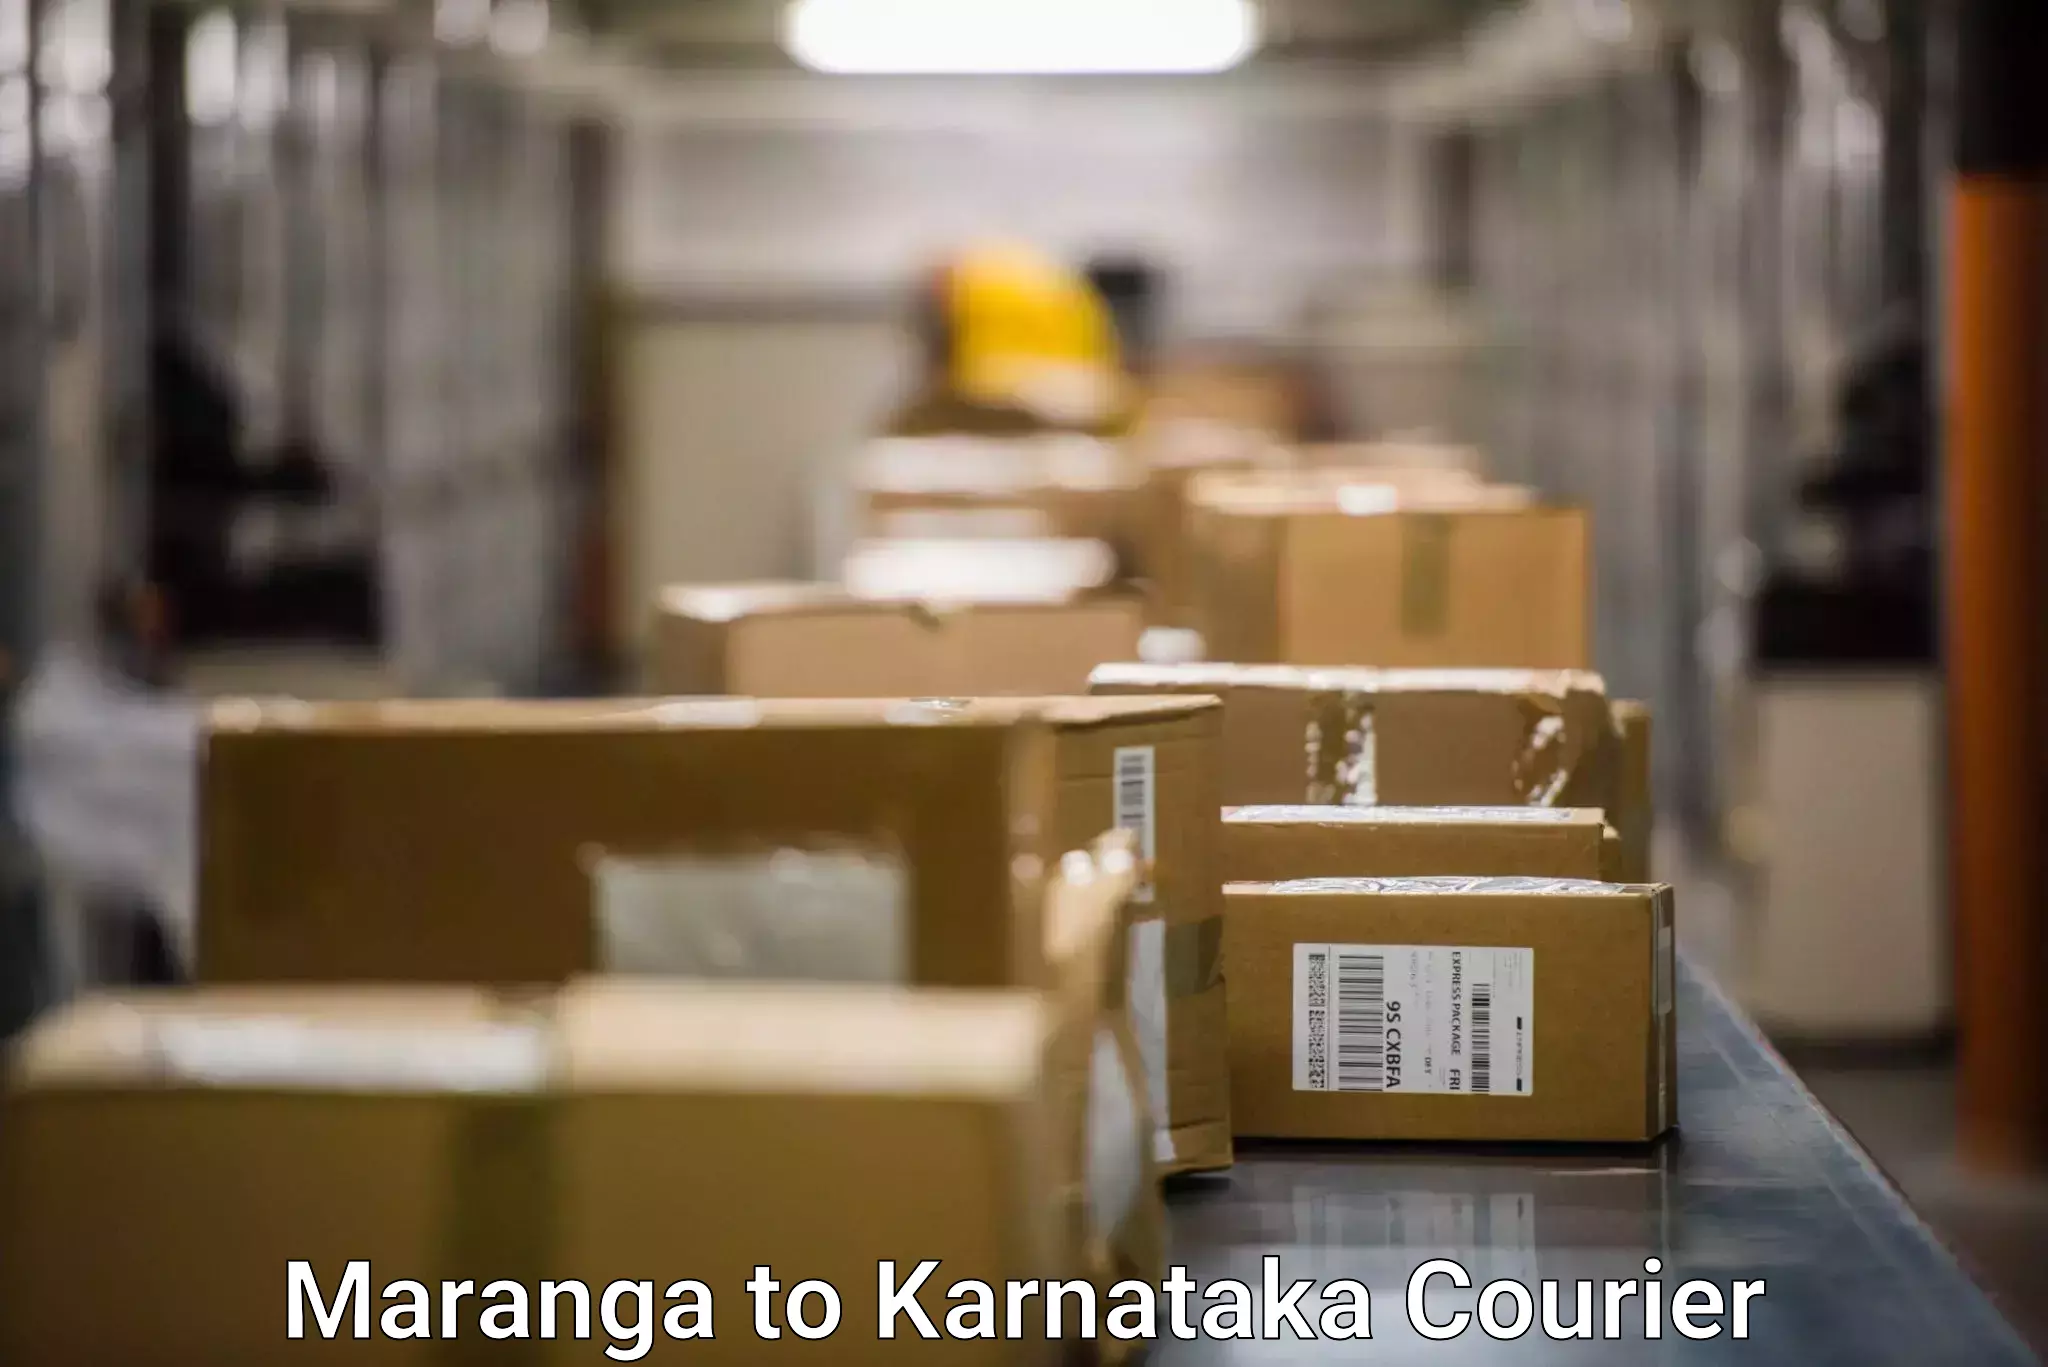 Domestic courier Maranga to Karnataka